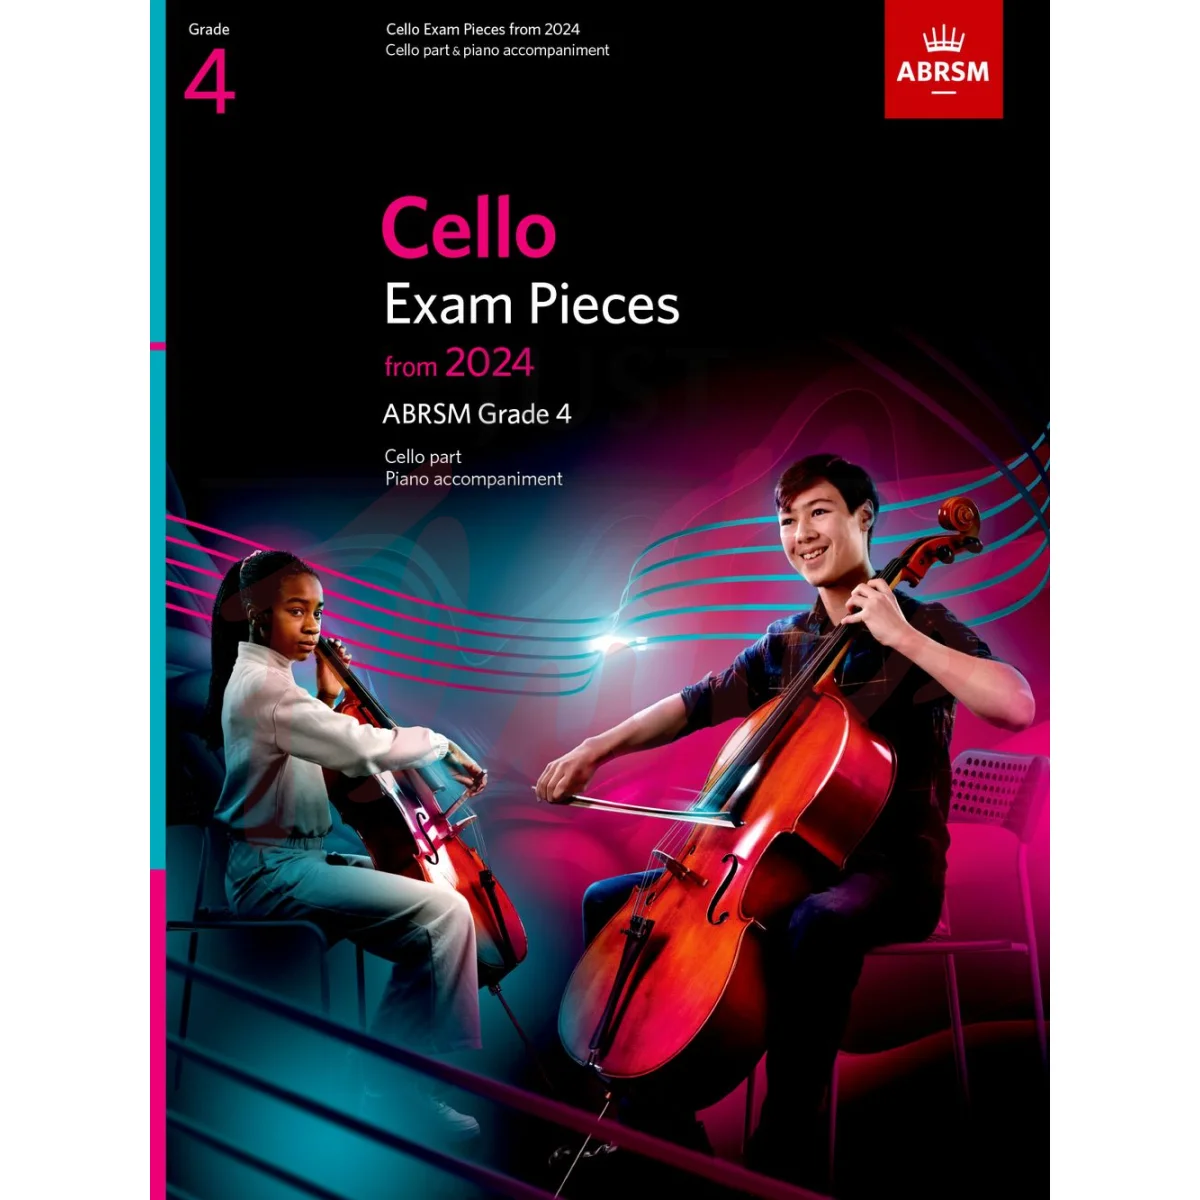 Cello Exam Pieces from 2024, Grade 4